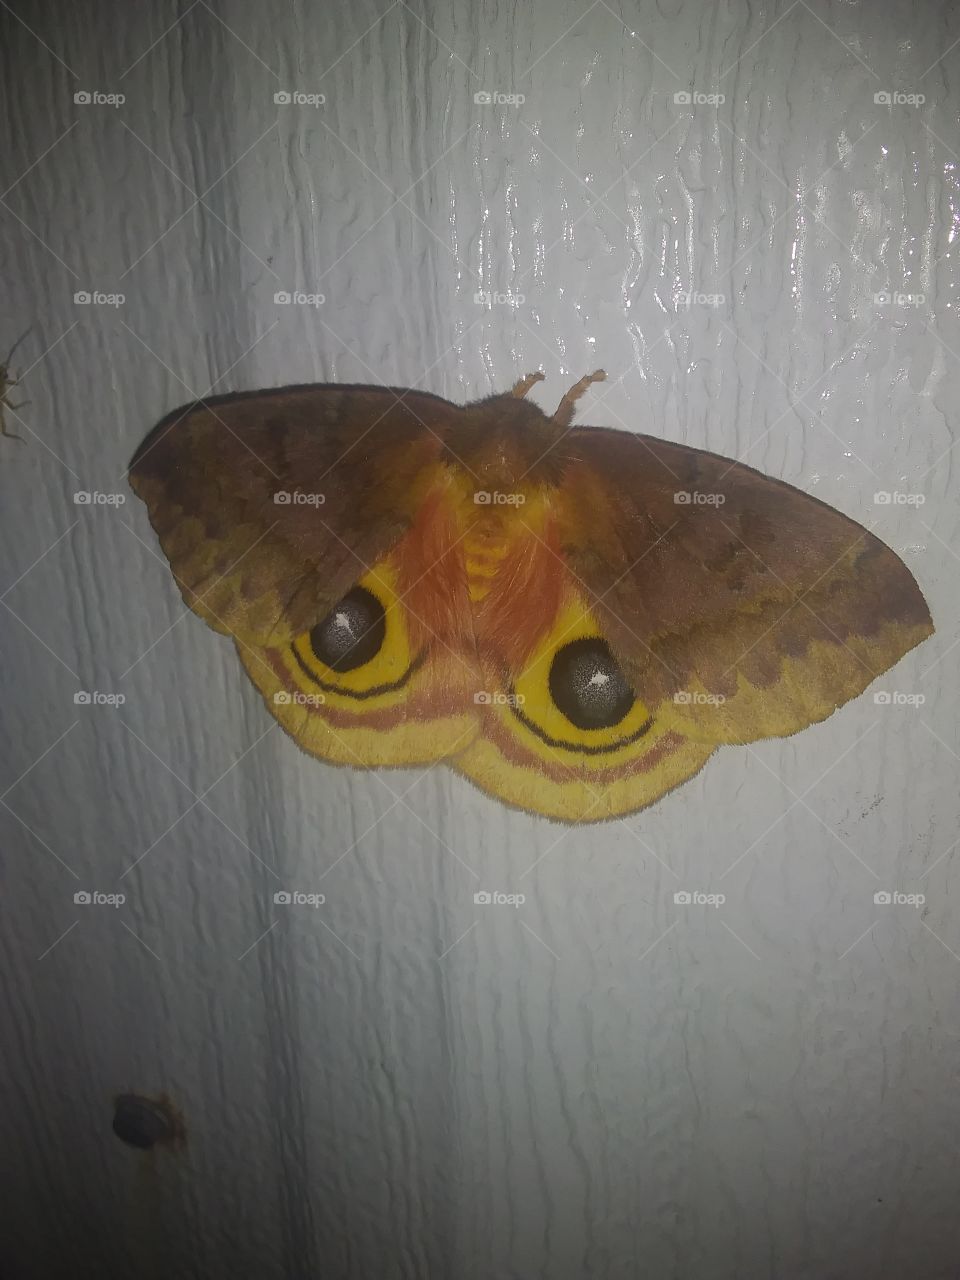 moth with big eyes